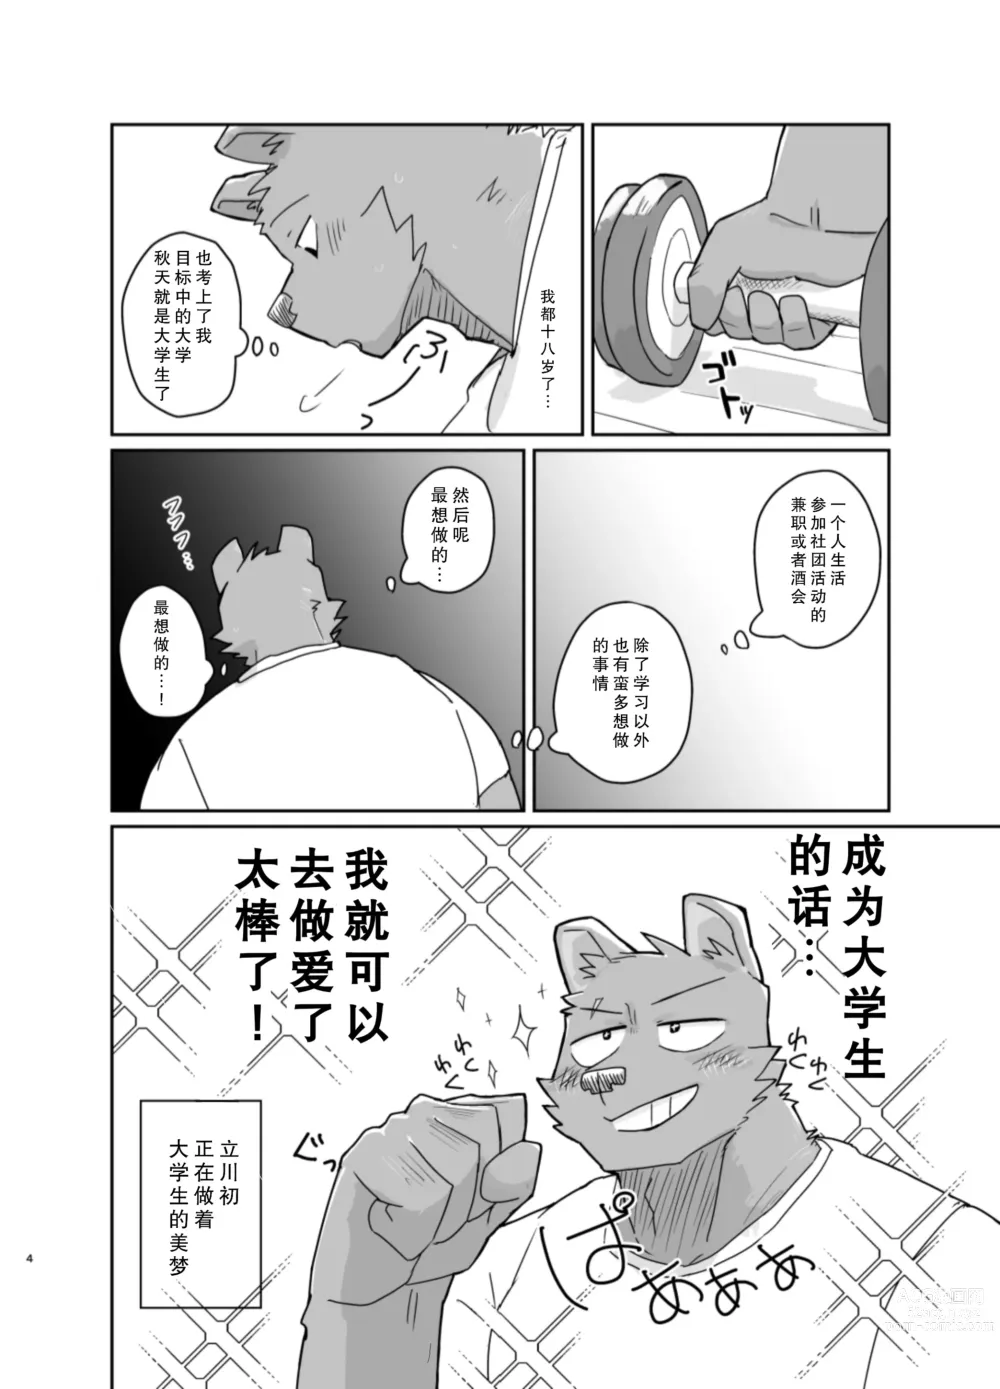 Page 4 of doujinshi 搬家的十分钟服务